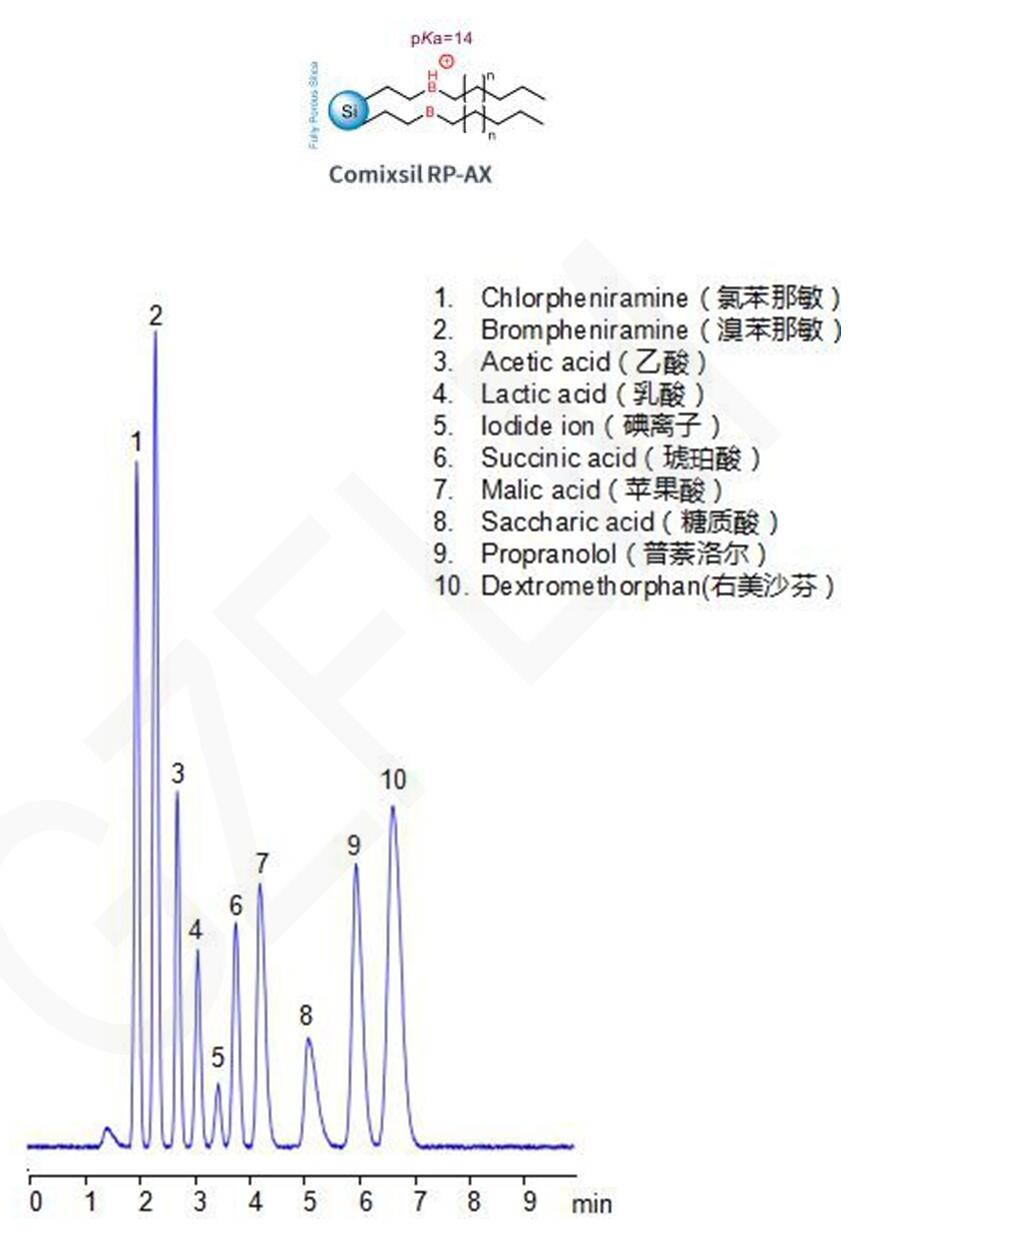 四种碱性药物和六种酸性抗衡离子的HPLC分析图谱